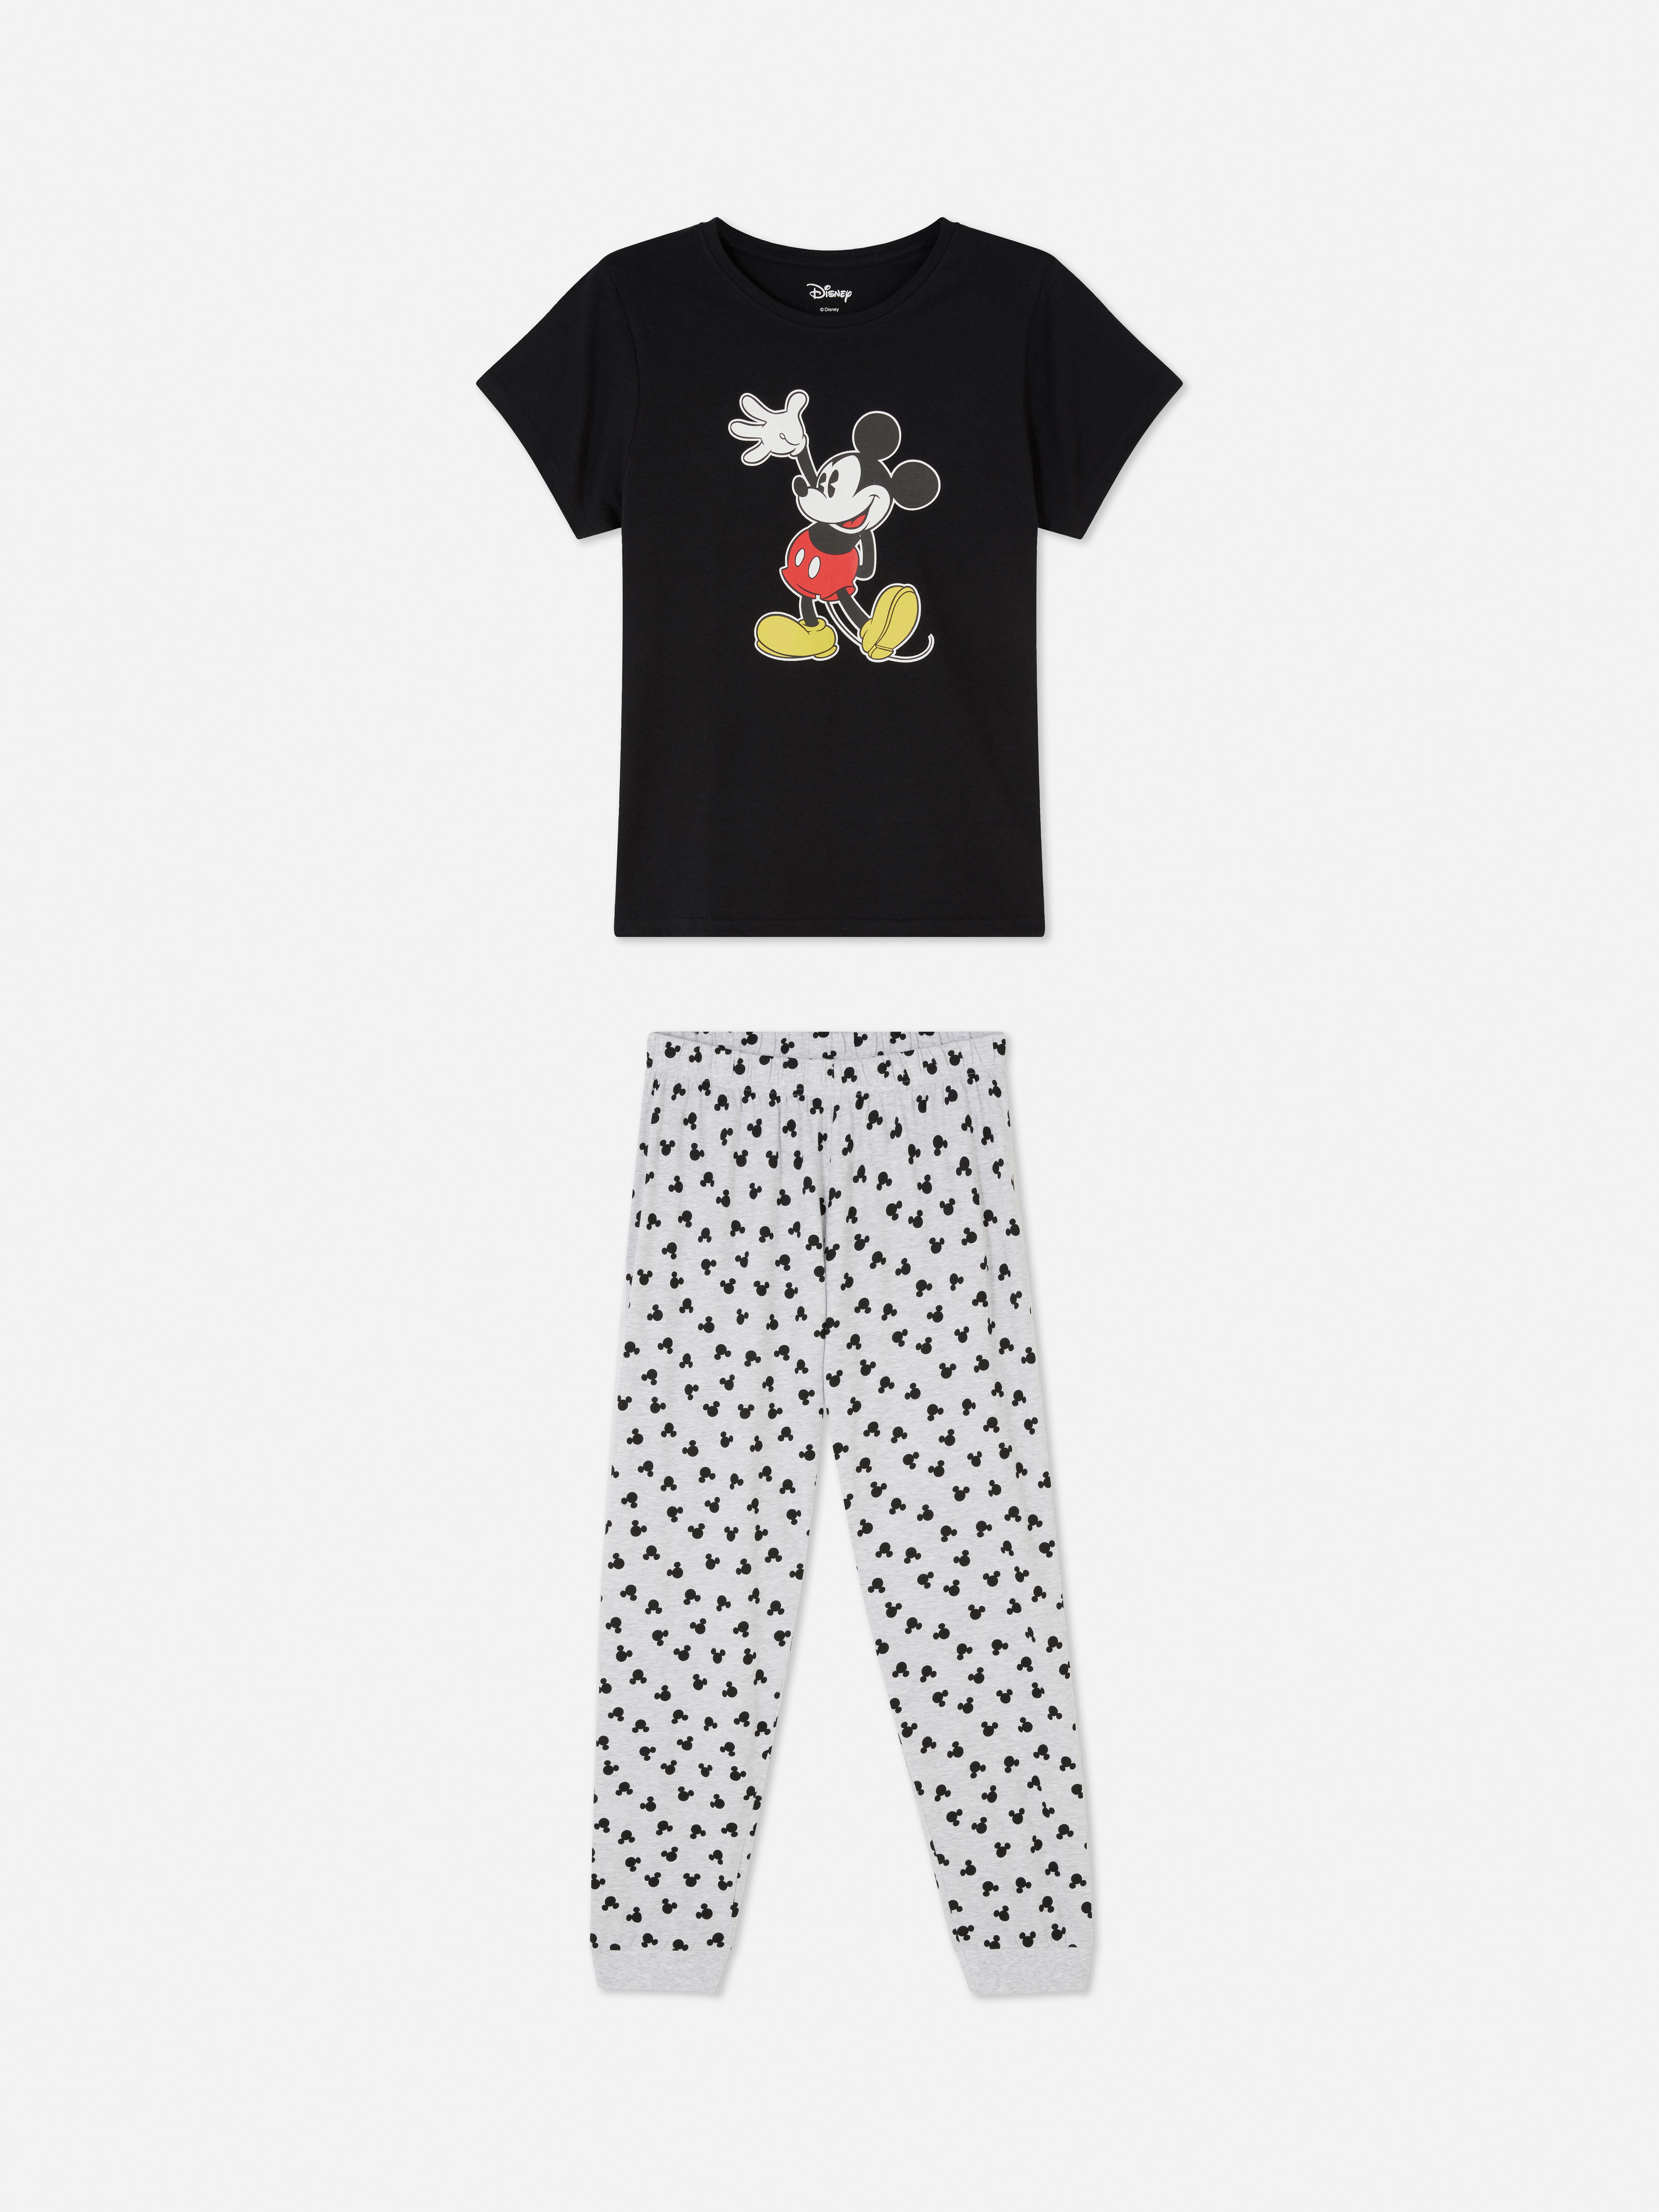 Pijama de Mickey Mouse de Disney | | Pijamas para mujer | Ropa para mujer | Nuestra de moda femenina | Todos los productos Primark | Primark España